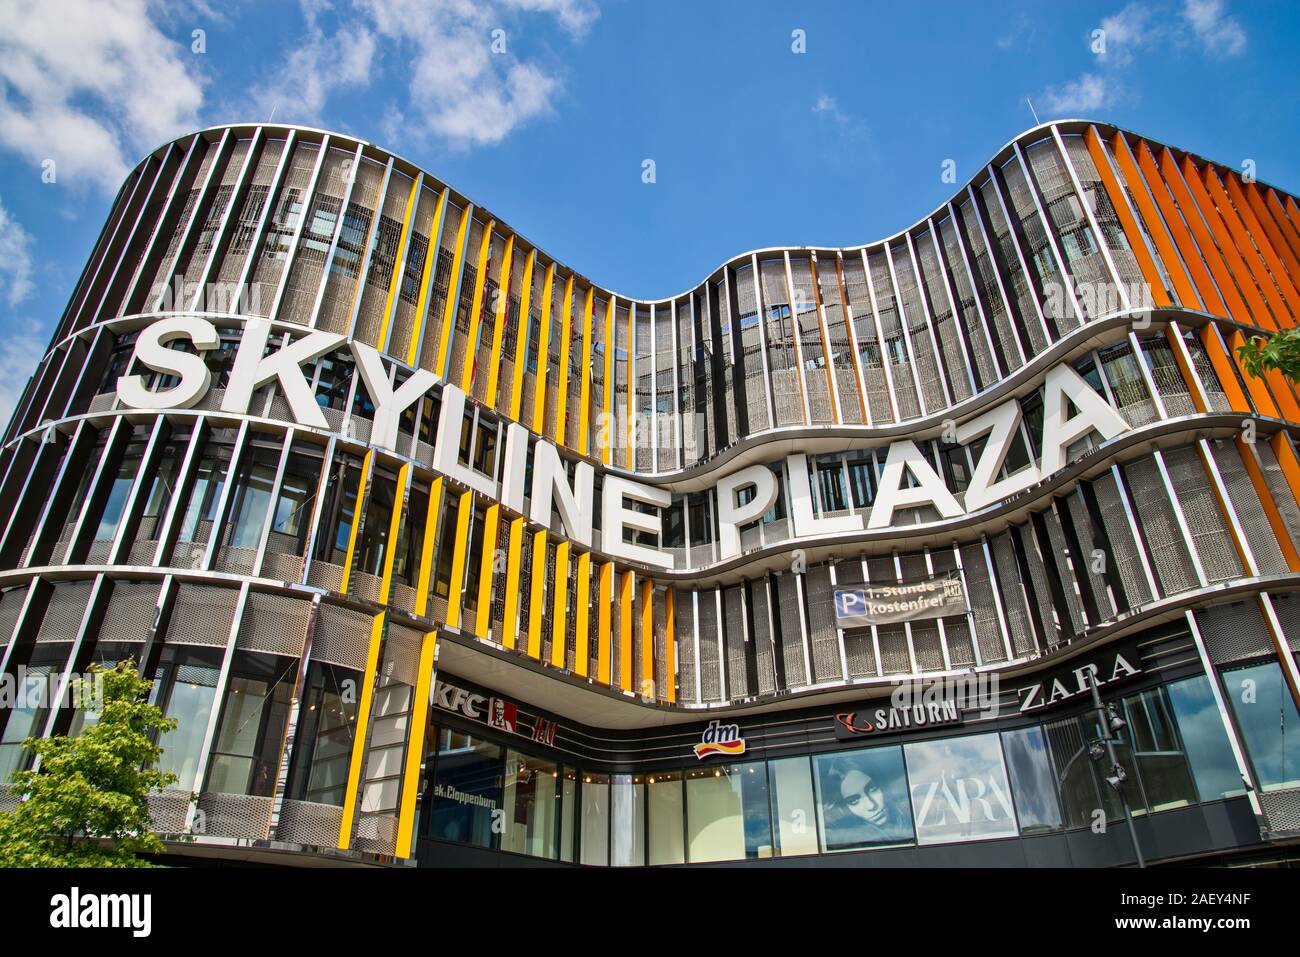 Francfort, Hesse/Deutschland - 13 juillet 2019Façade de shopping mall Skyline Plaza à Francfort Banque D'Images